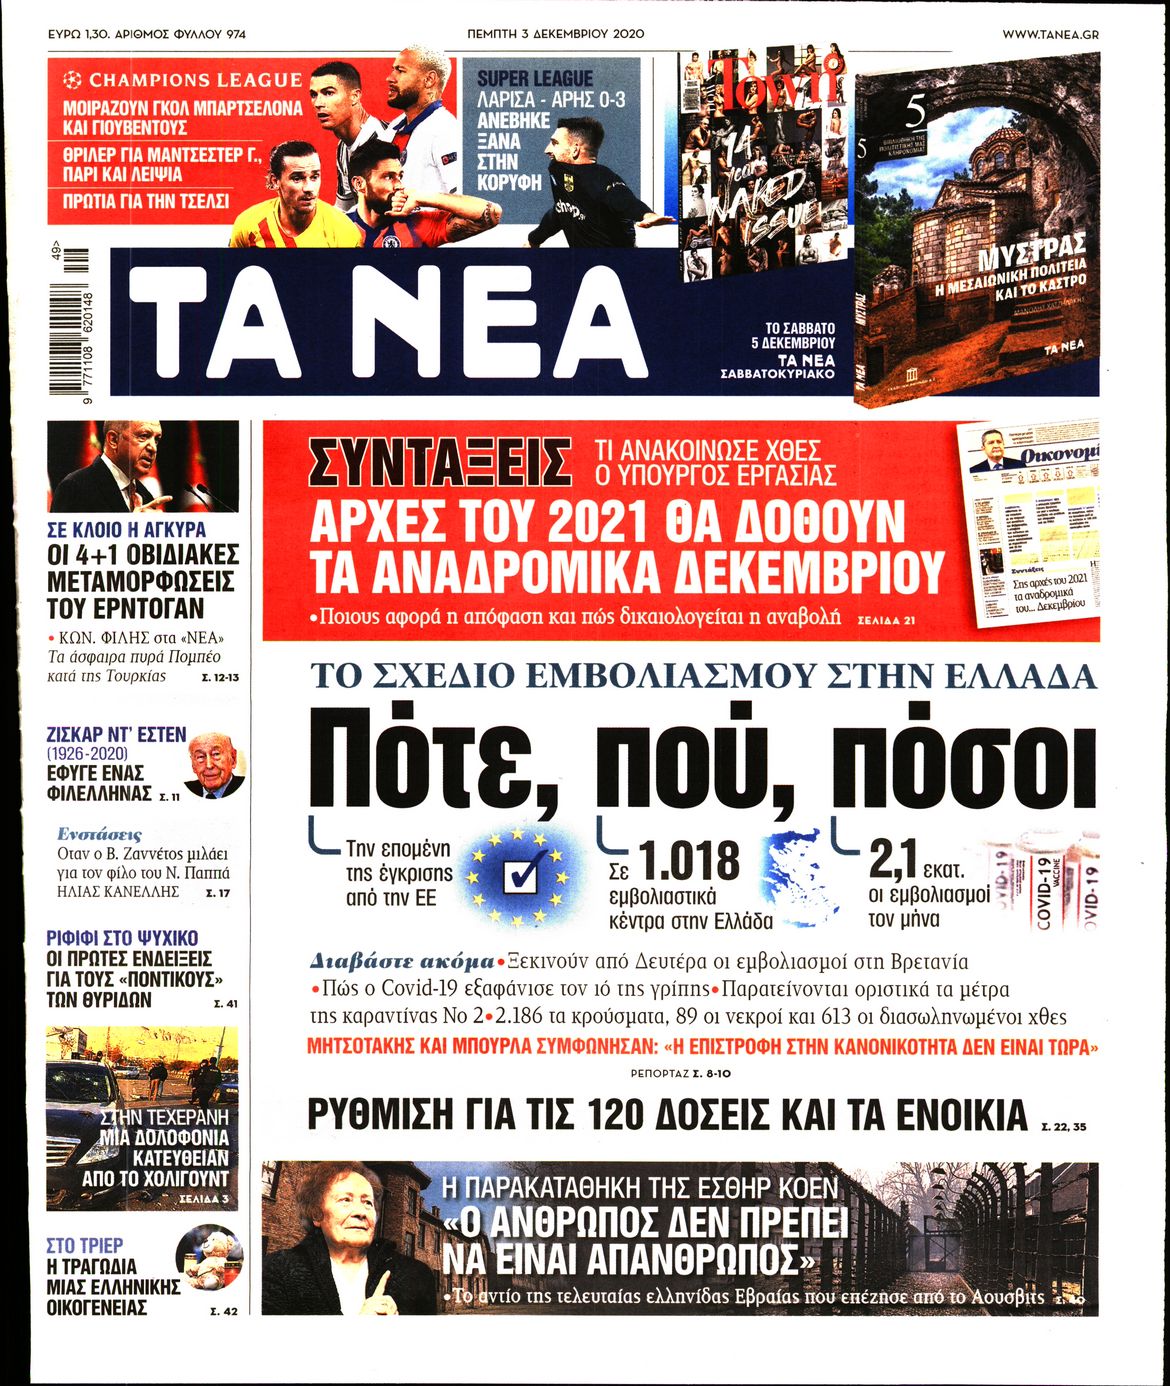 Εξώφυλο εφημερίδας ΤΑ ΝΕΑ 2020-12-03